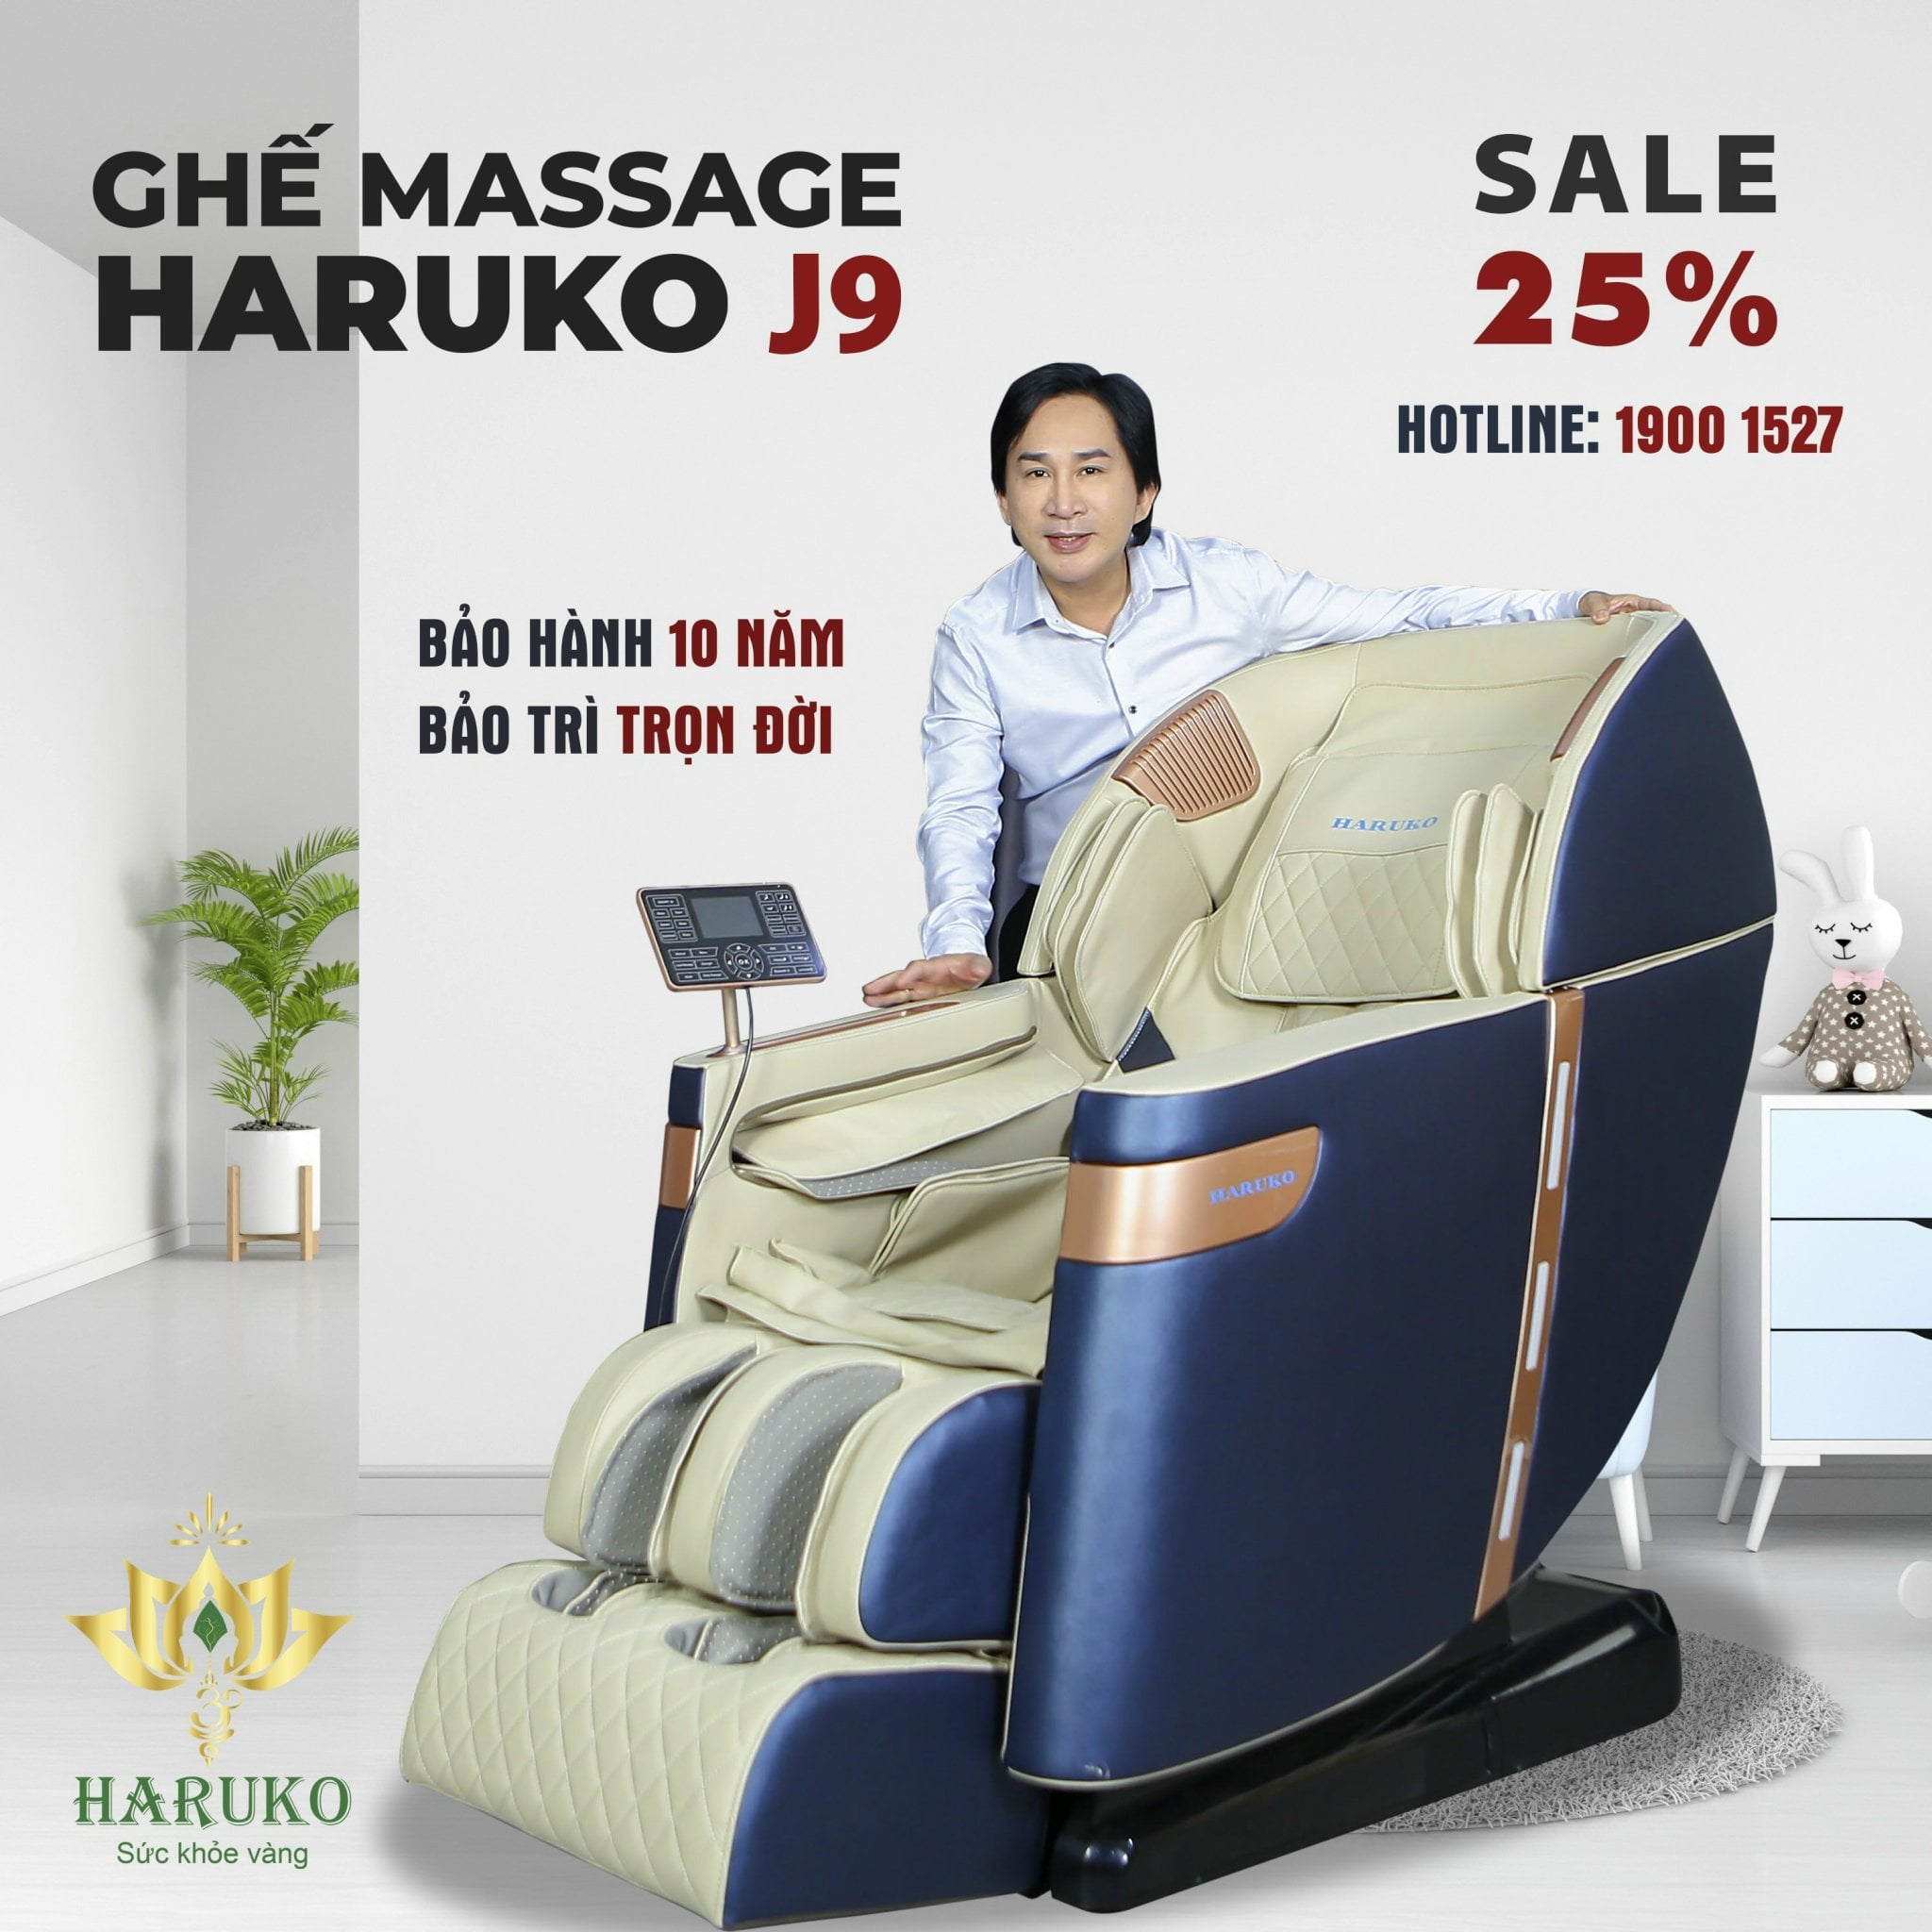 Nhu cầu tìm mua sản phẩm ghế massage tại Bình Dương ngày càng nhiều cùng với đó là những địa điểm cung cấp ghế massage mới mở ra trên địa bàn